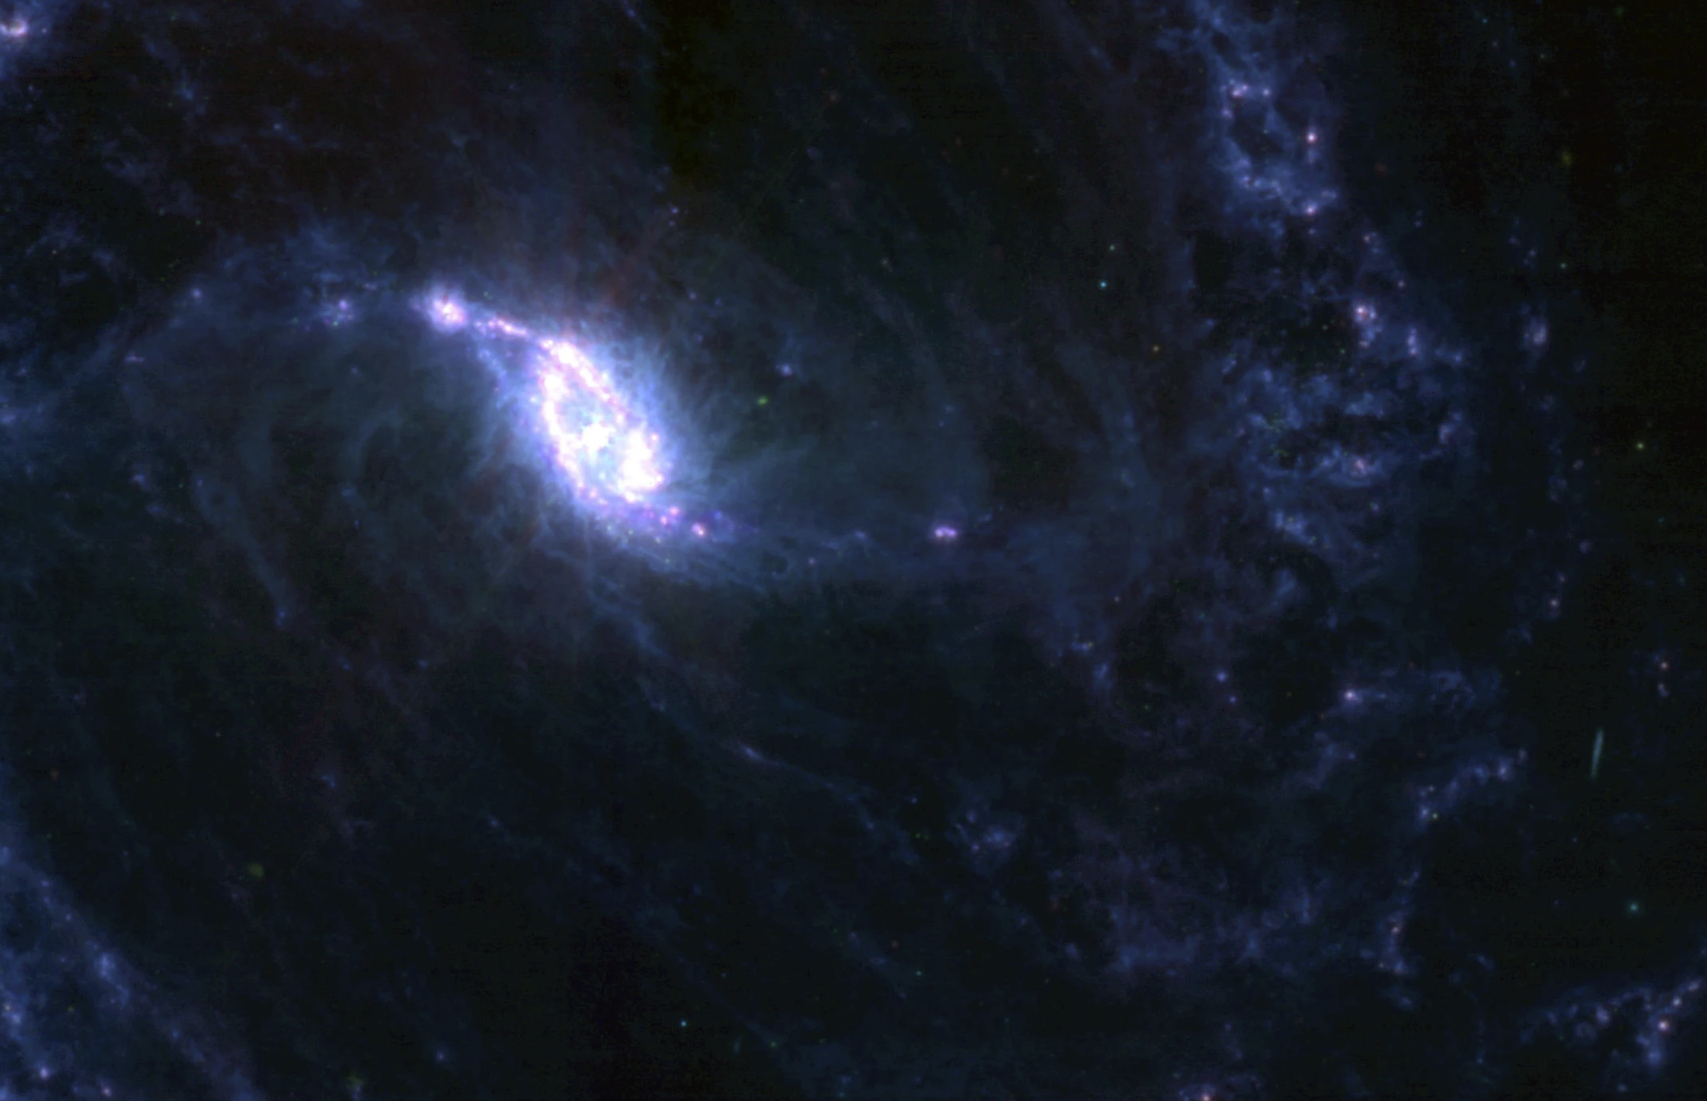 詹姆斯-韦伯太空望远镜拍摄的大棒状螺旋星系NGC 1365